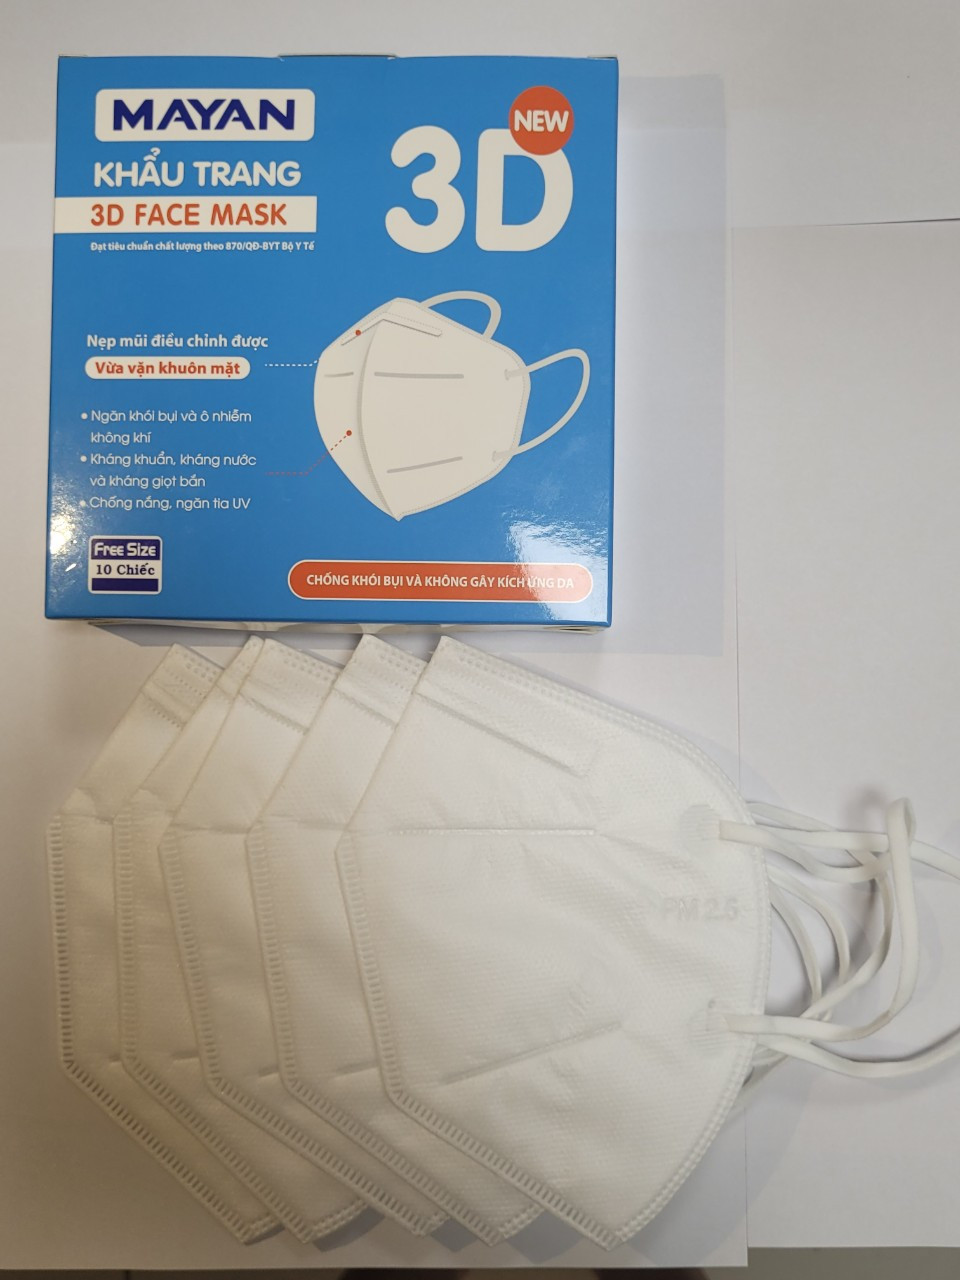 Hộp 10 Khẩu Trang Mayan 3D Mask Chống Bụi PM 2.5 Cao Cấp, Màng Lọc Tiêu Chuẩn N95